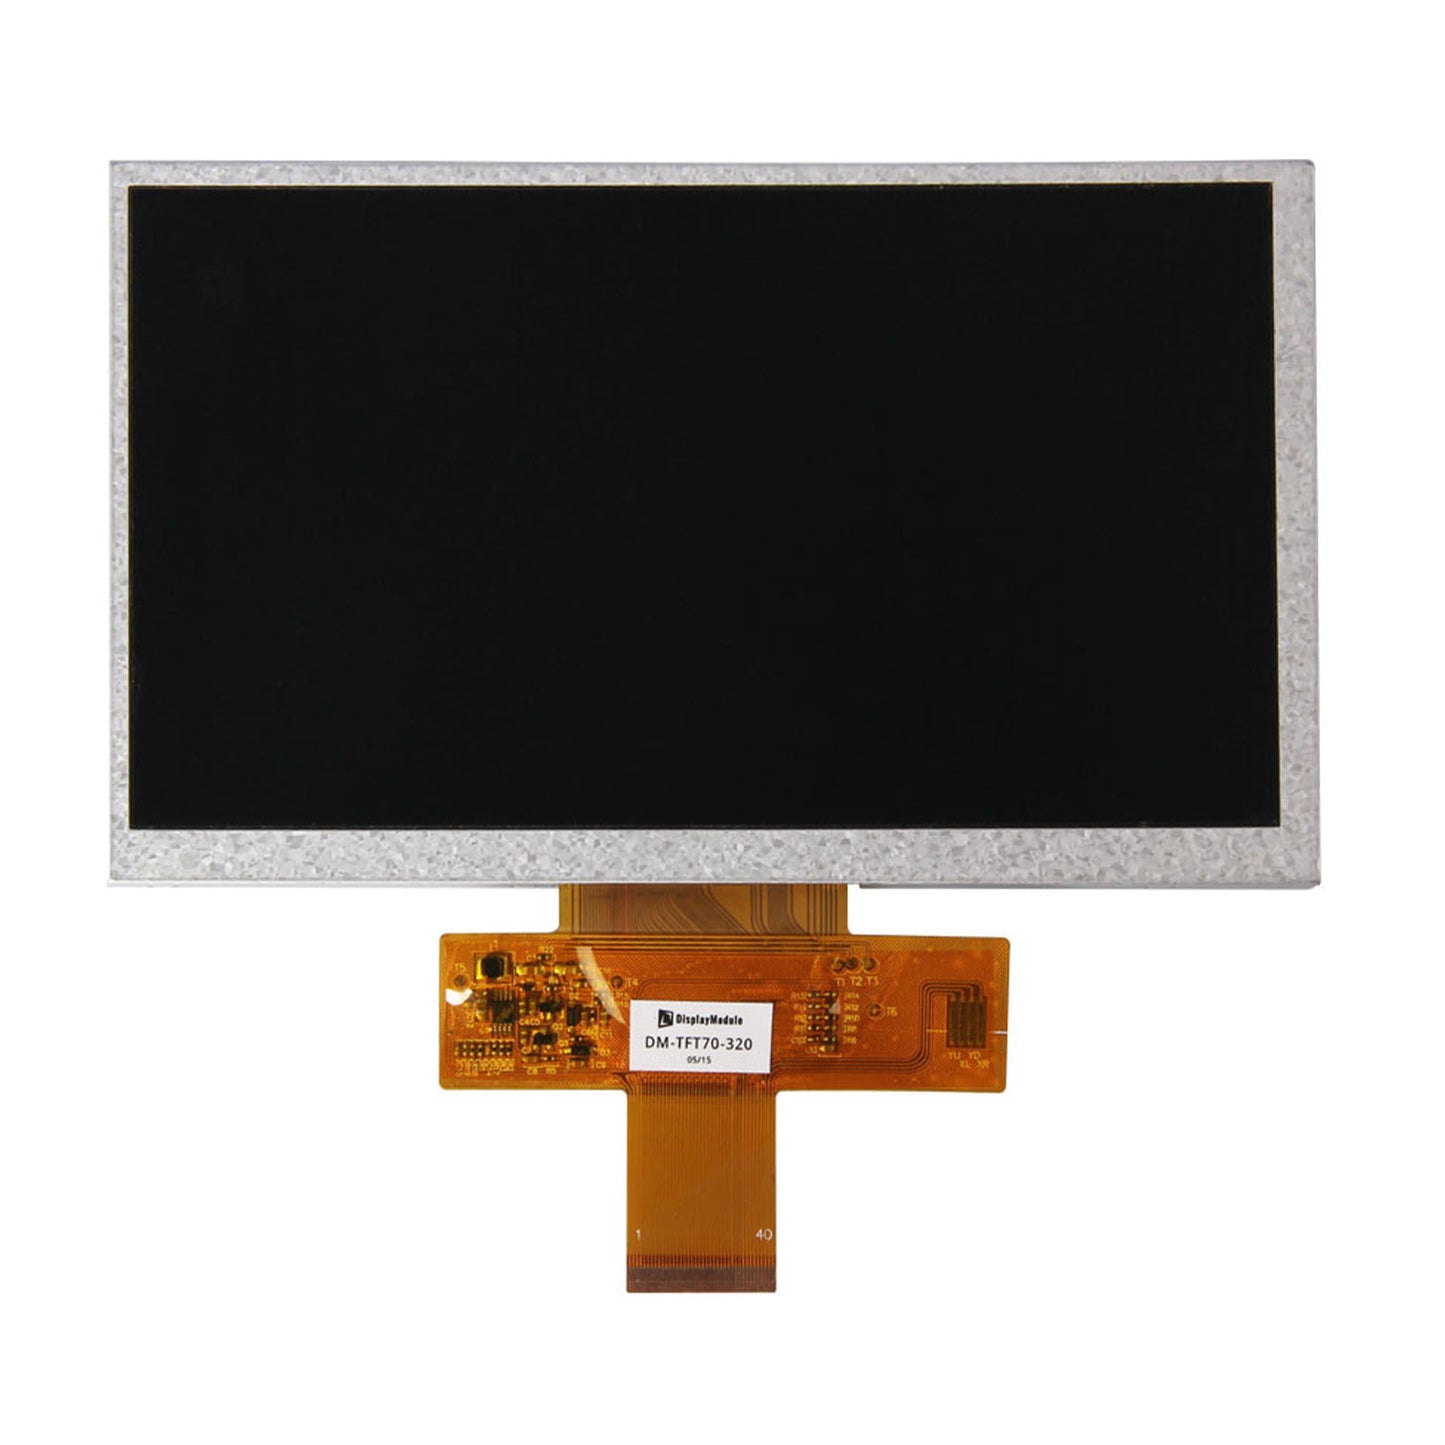 DisplayModule 7.0" 800x480 TFT LCD Display Panel - RGB